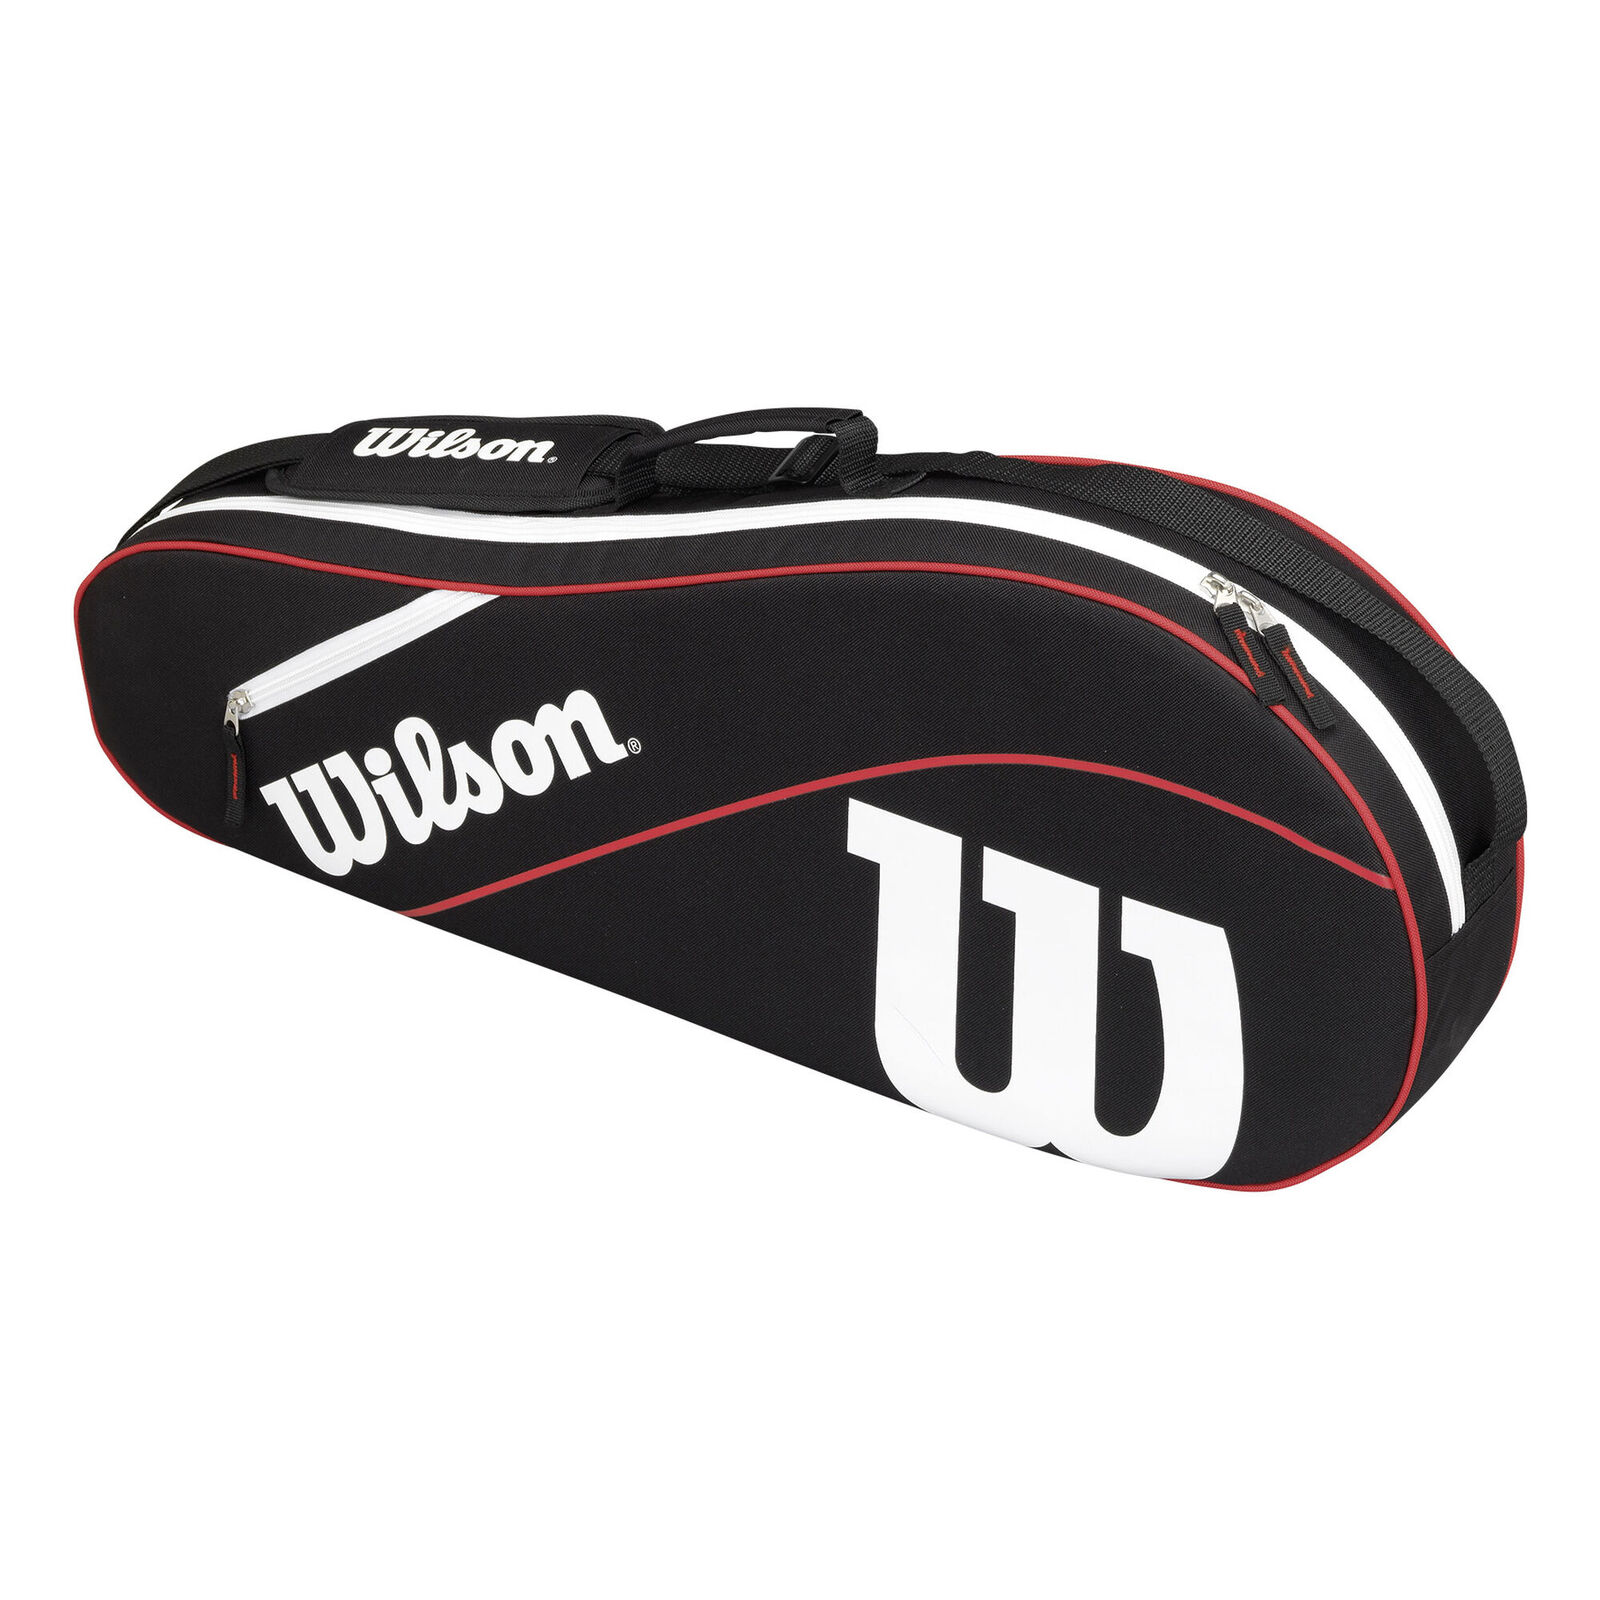 Wilson Shift Super Tour 15 Pack Racquet Bag | RacquetGuys